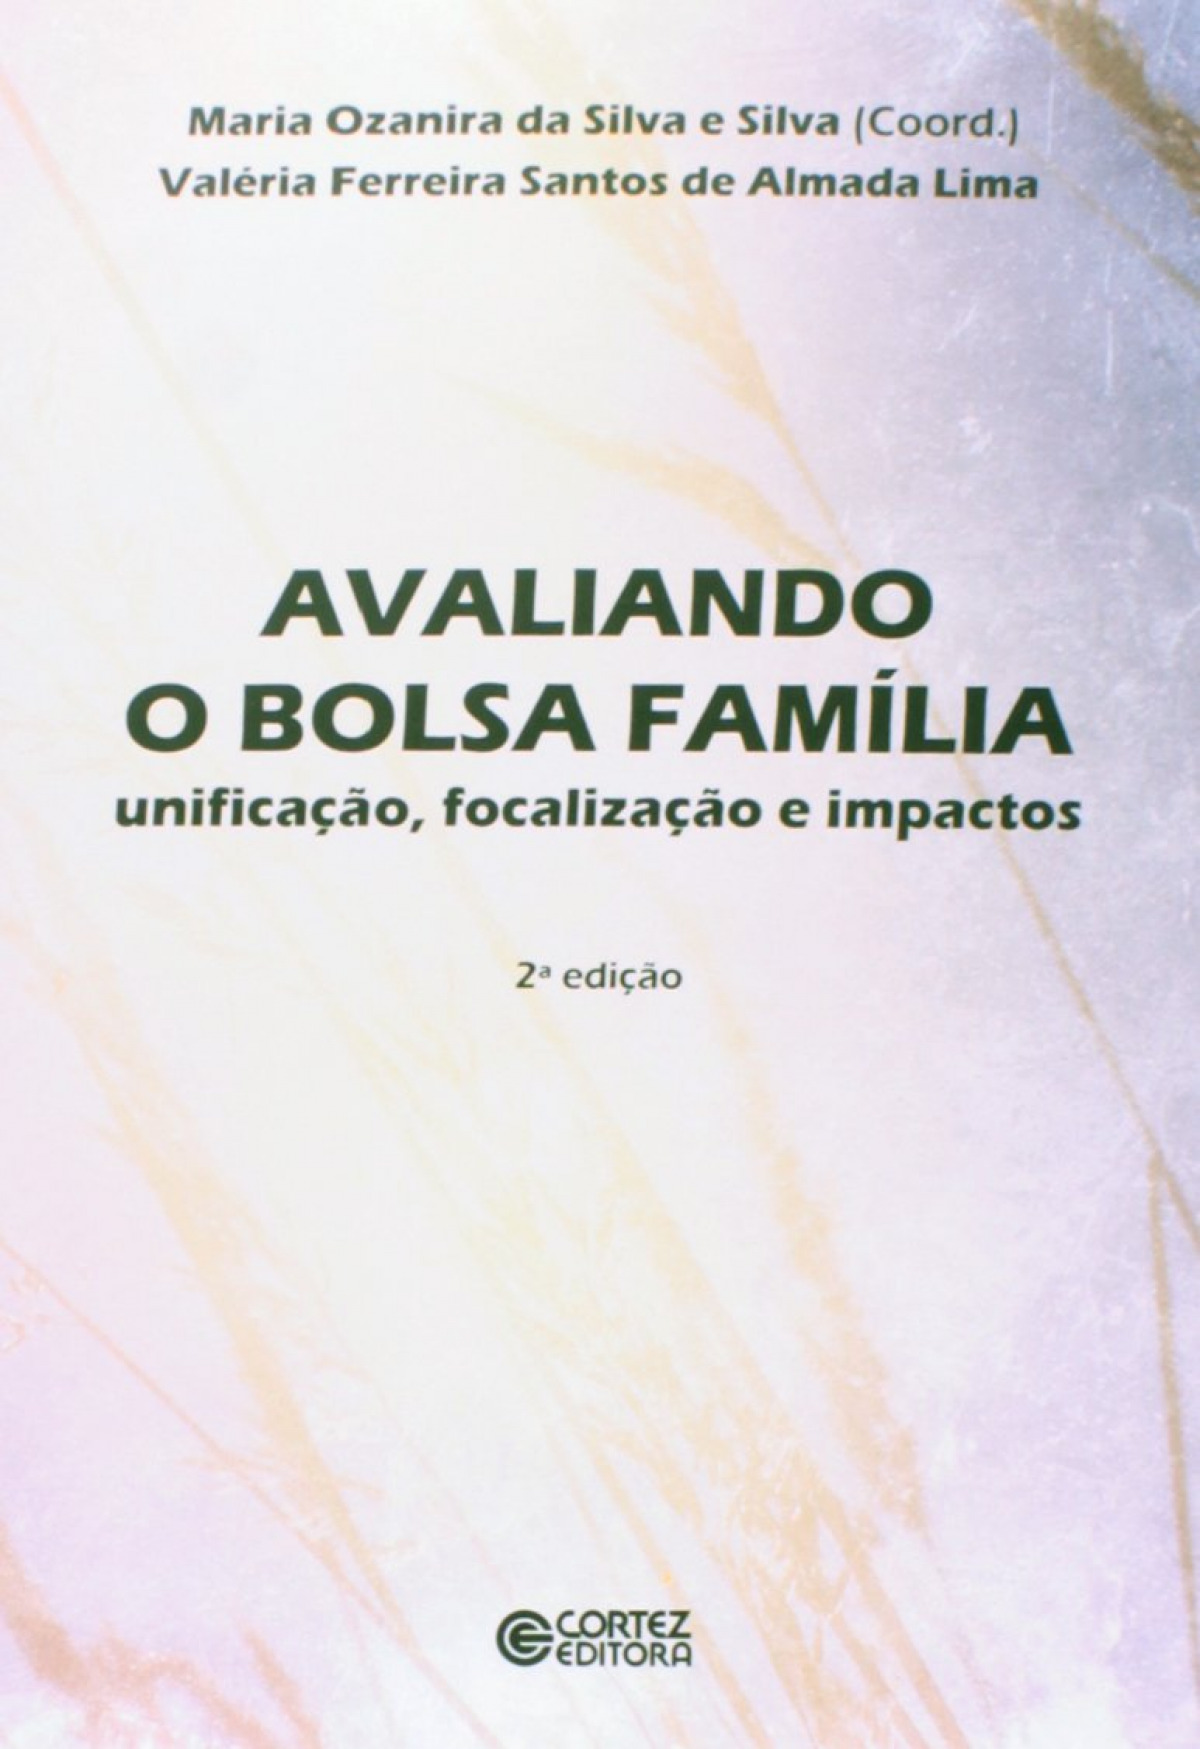 Avaliando o Bolsa Família - da Silva e Silva, Maria Ozanira